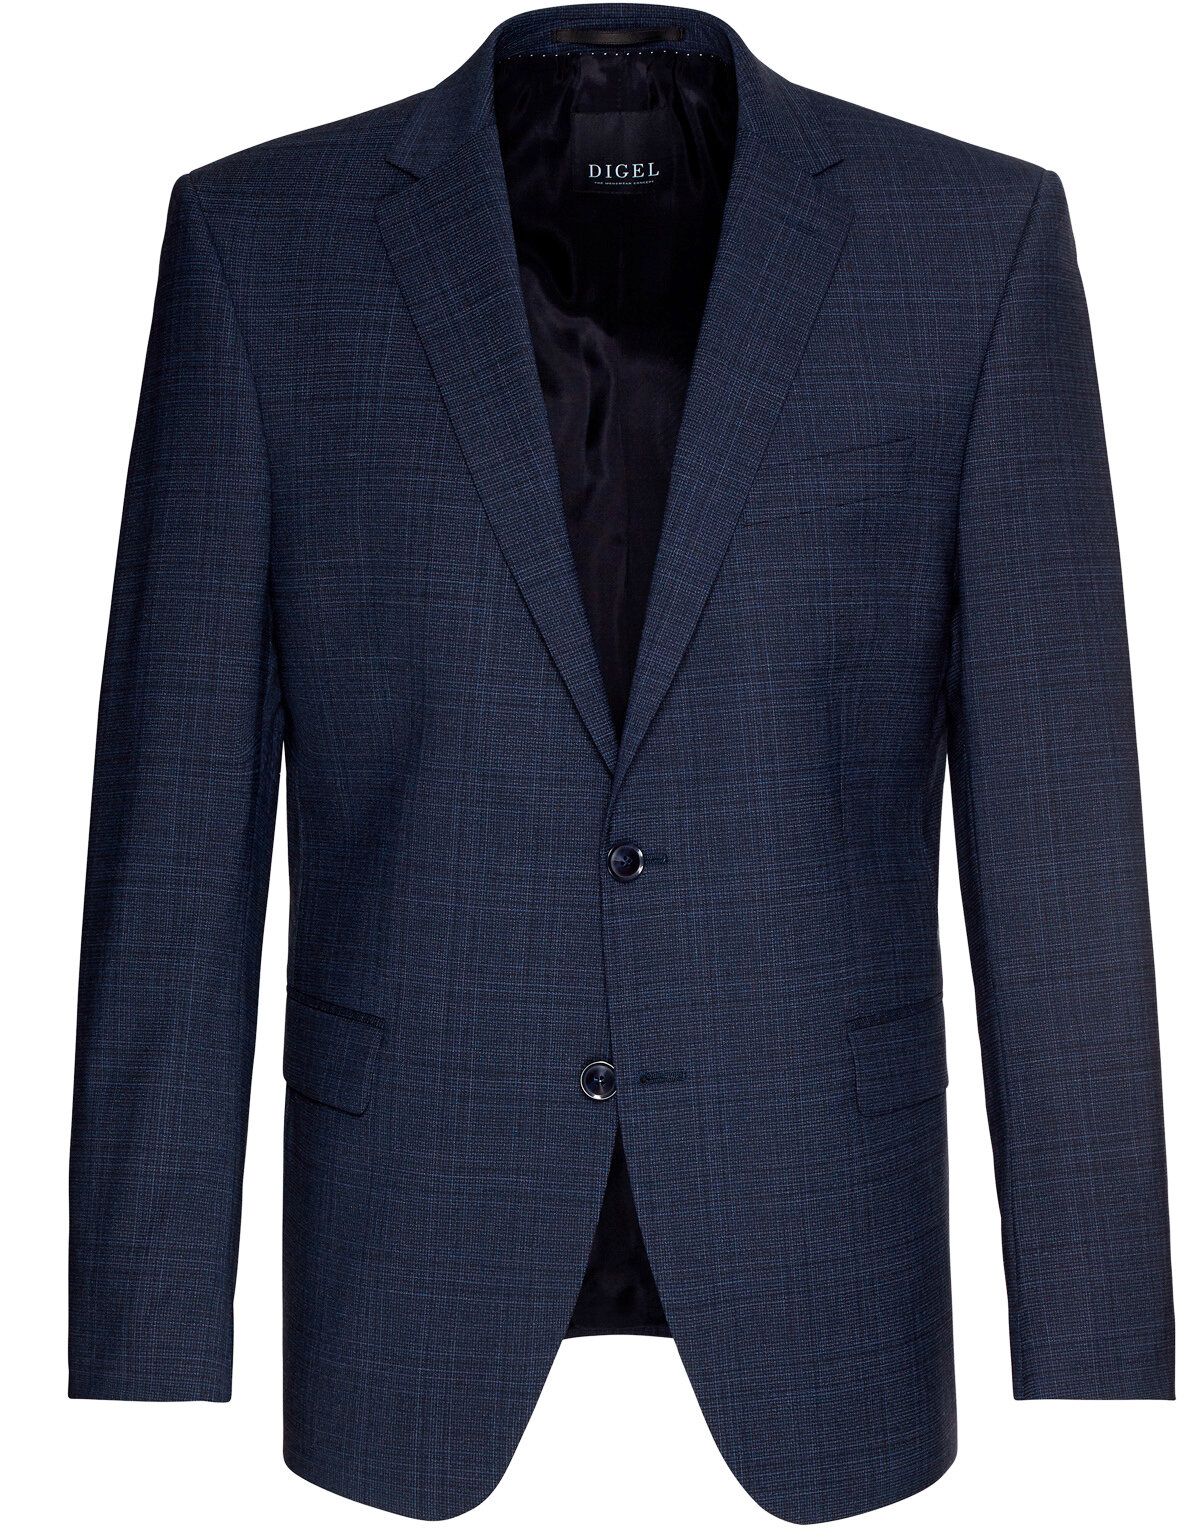 Классический пиджак Digel, modern fit, 2 шлицы | купить в интернет-магазине Olymp-Men